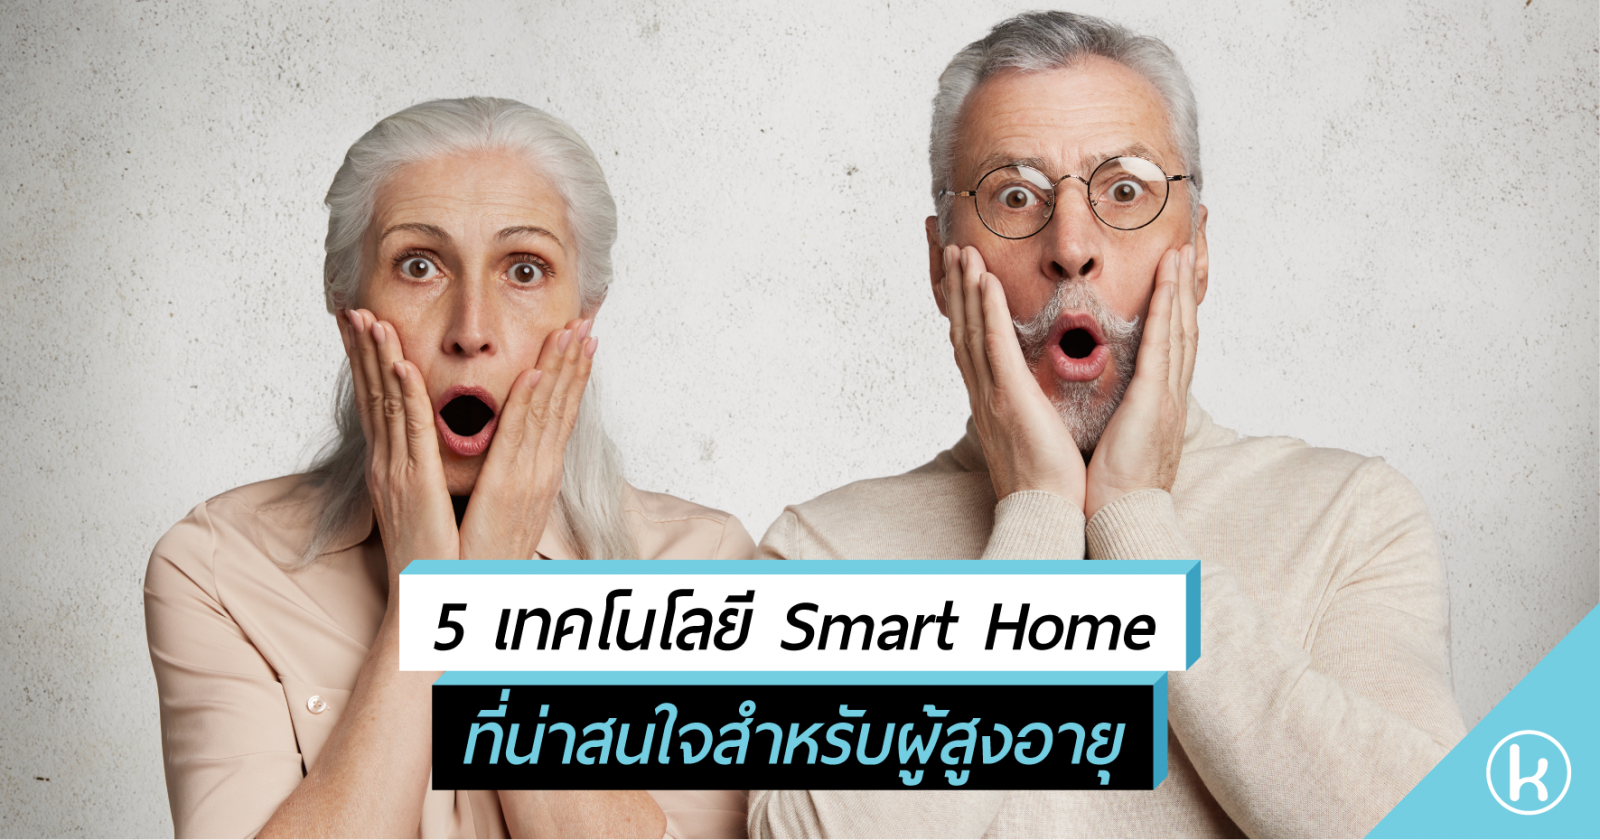 5 เทคโนโลยี Smart Home ที่น่าสนใจสำหรับผู้สูงอายุ